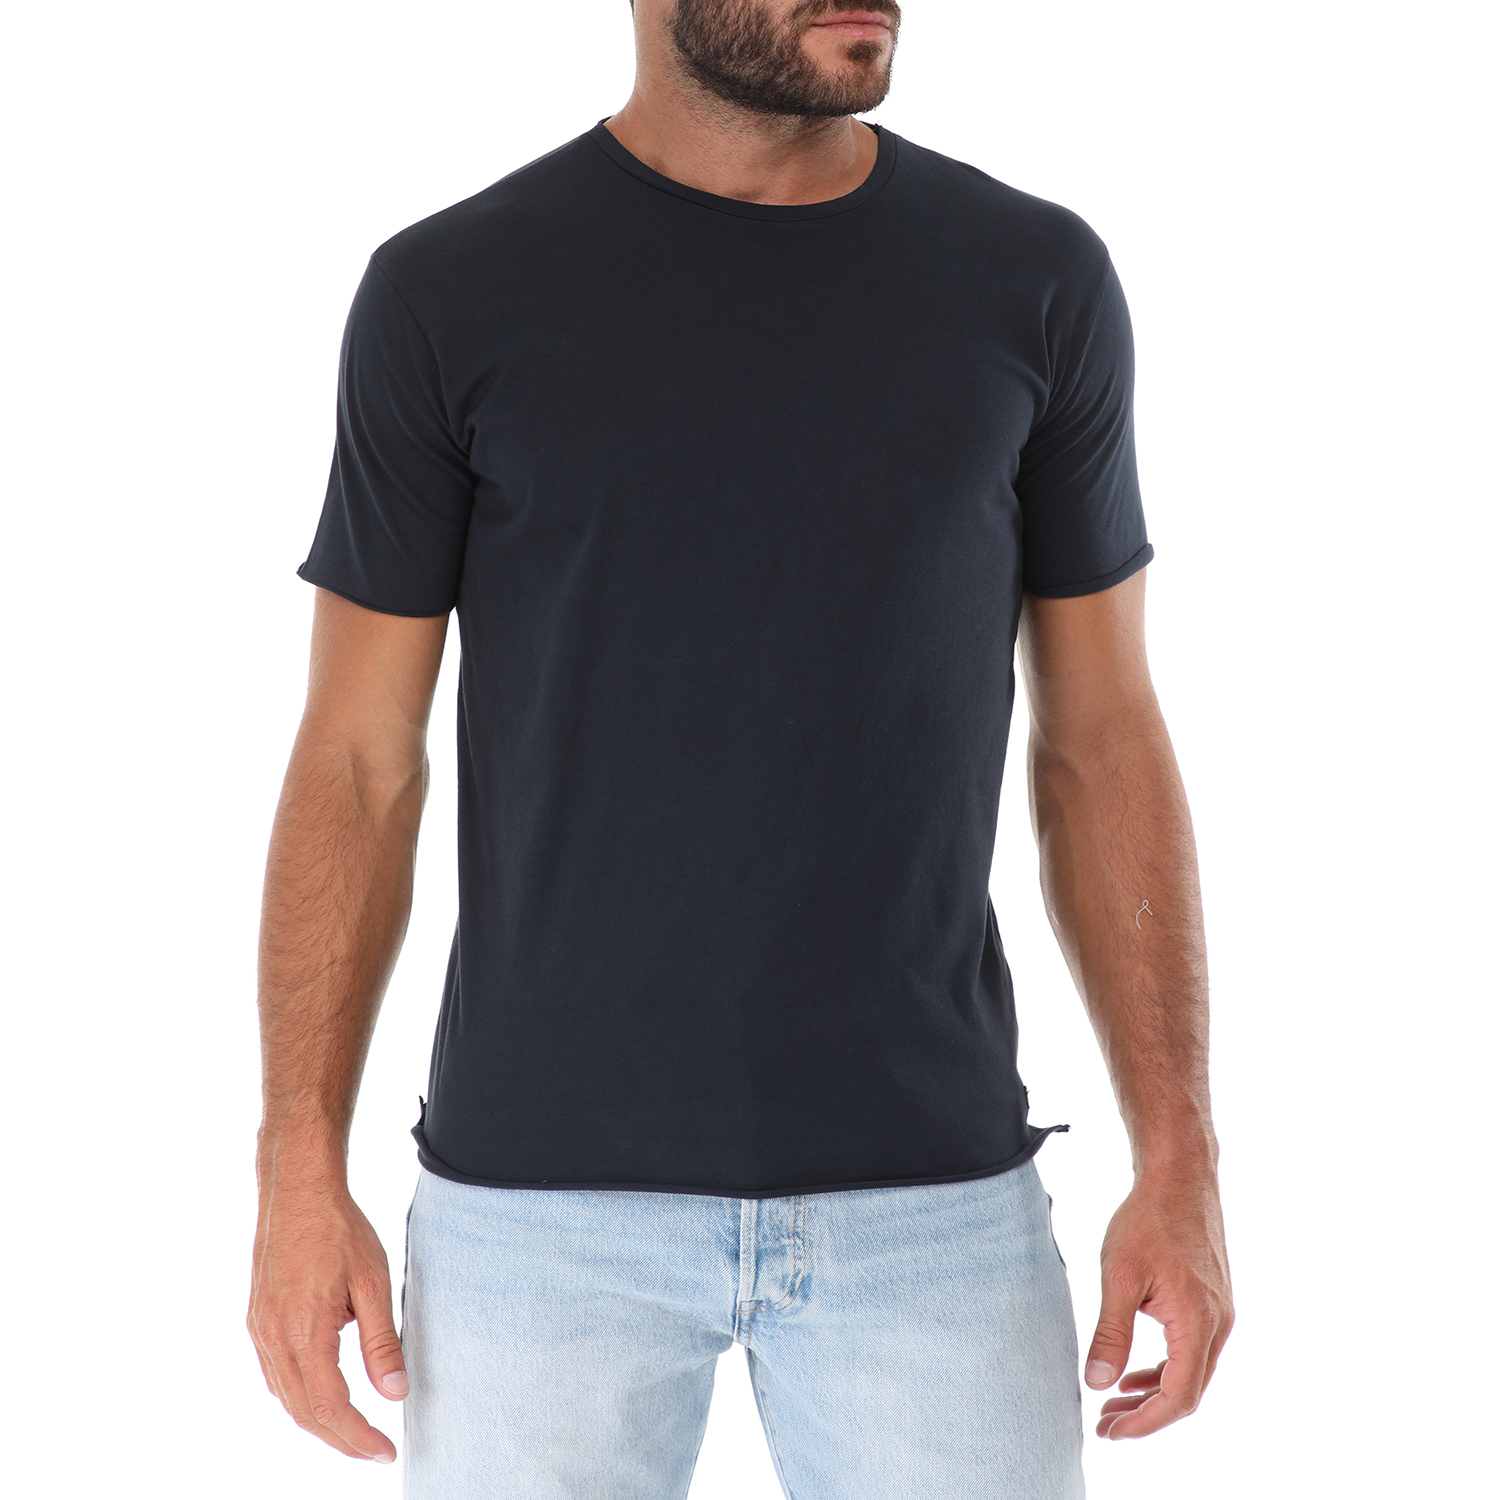 Ανδρικά/Ρούχα/Μπλούζες/Κοντομάνικες GREENWOOD - Ανδρικό t-shirt GREENWOOD μπλε